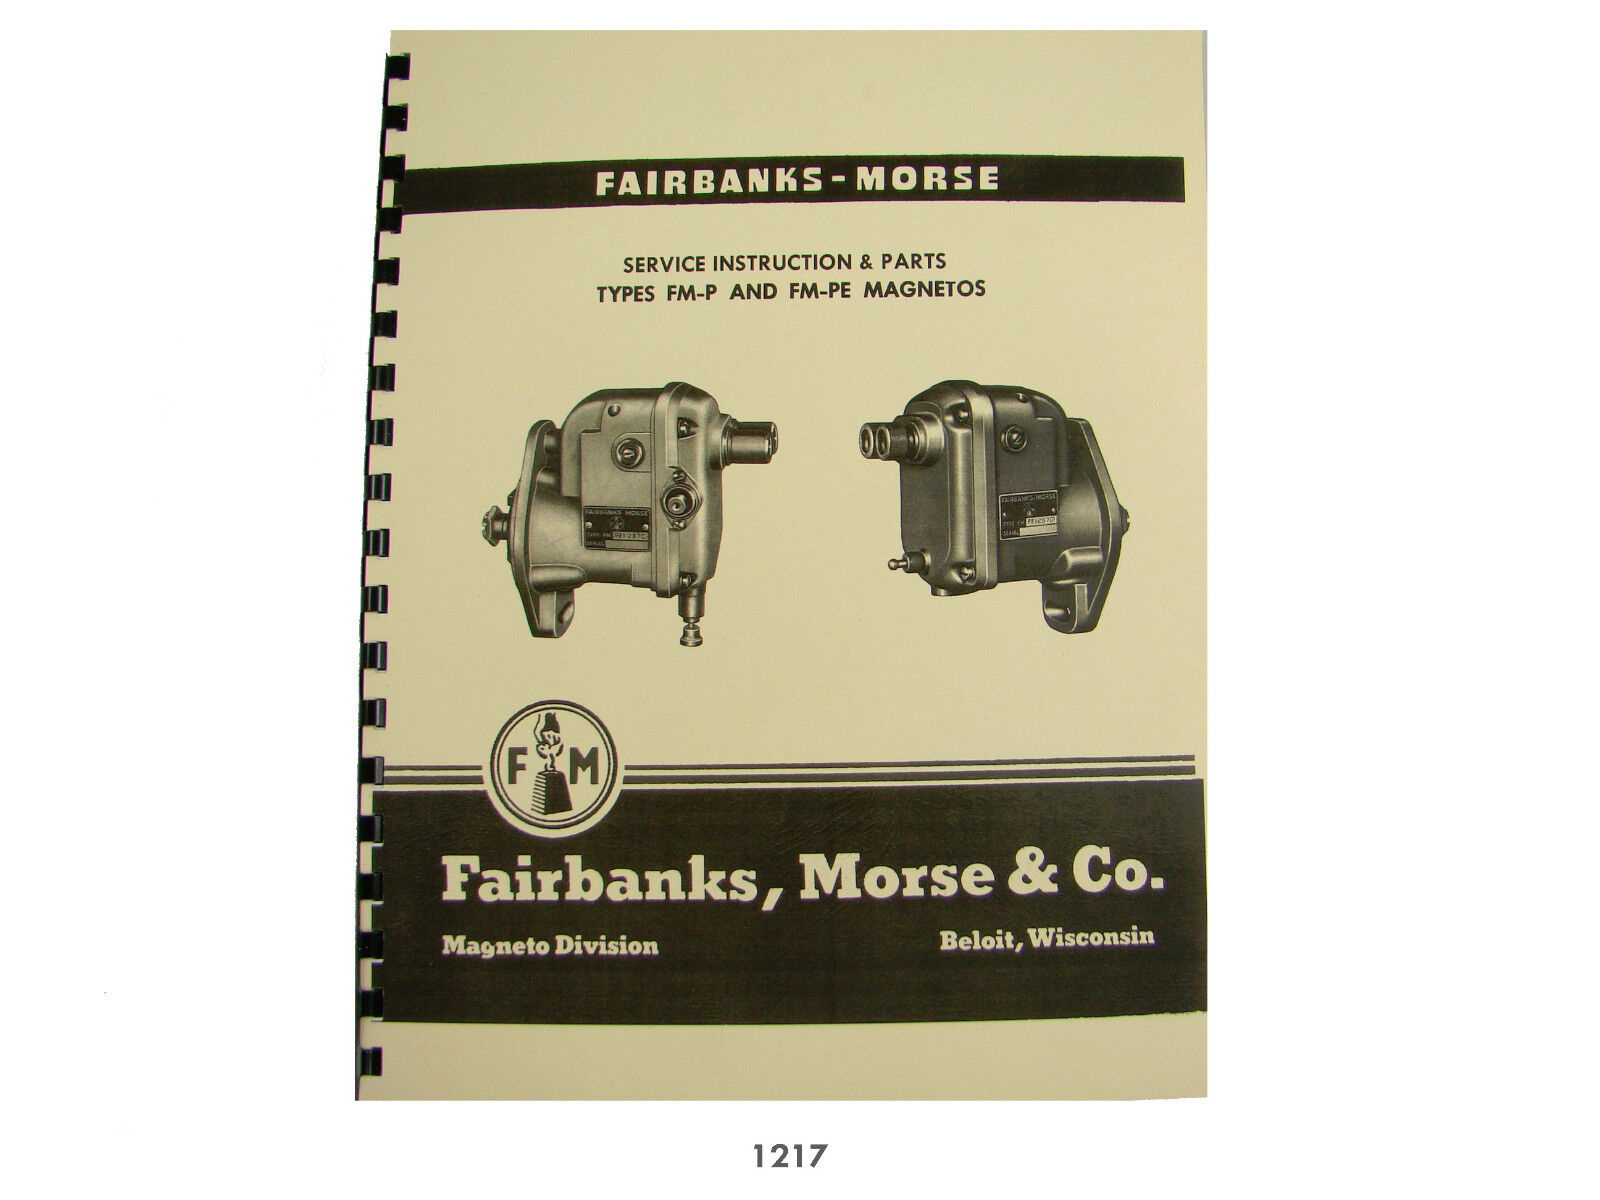 Fairbanks Morse MagnetoTypes FM-P & FM-PE Service & Parts Manual M274 Mule *1217